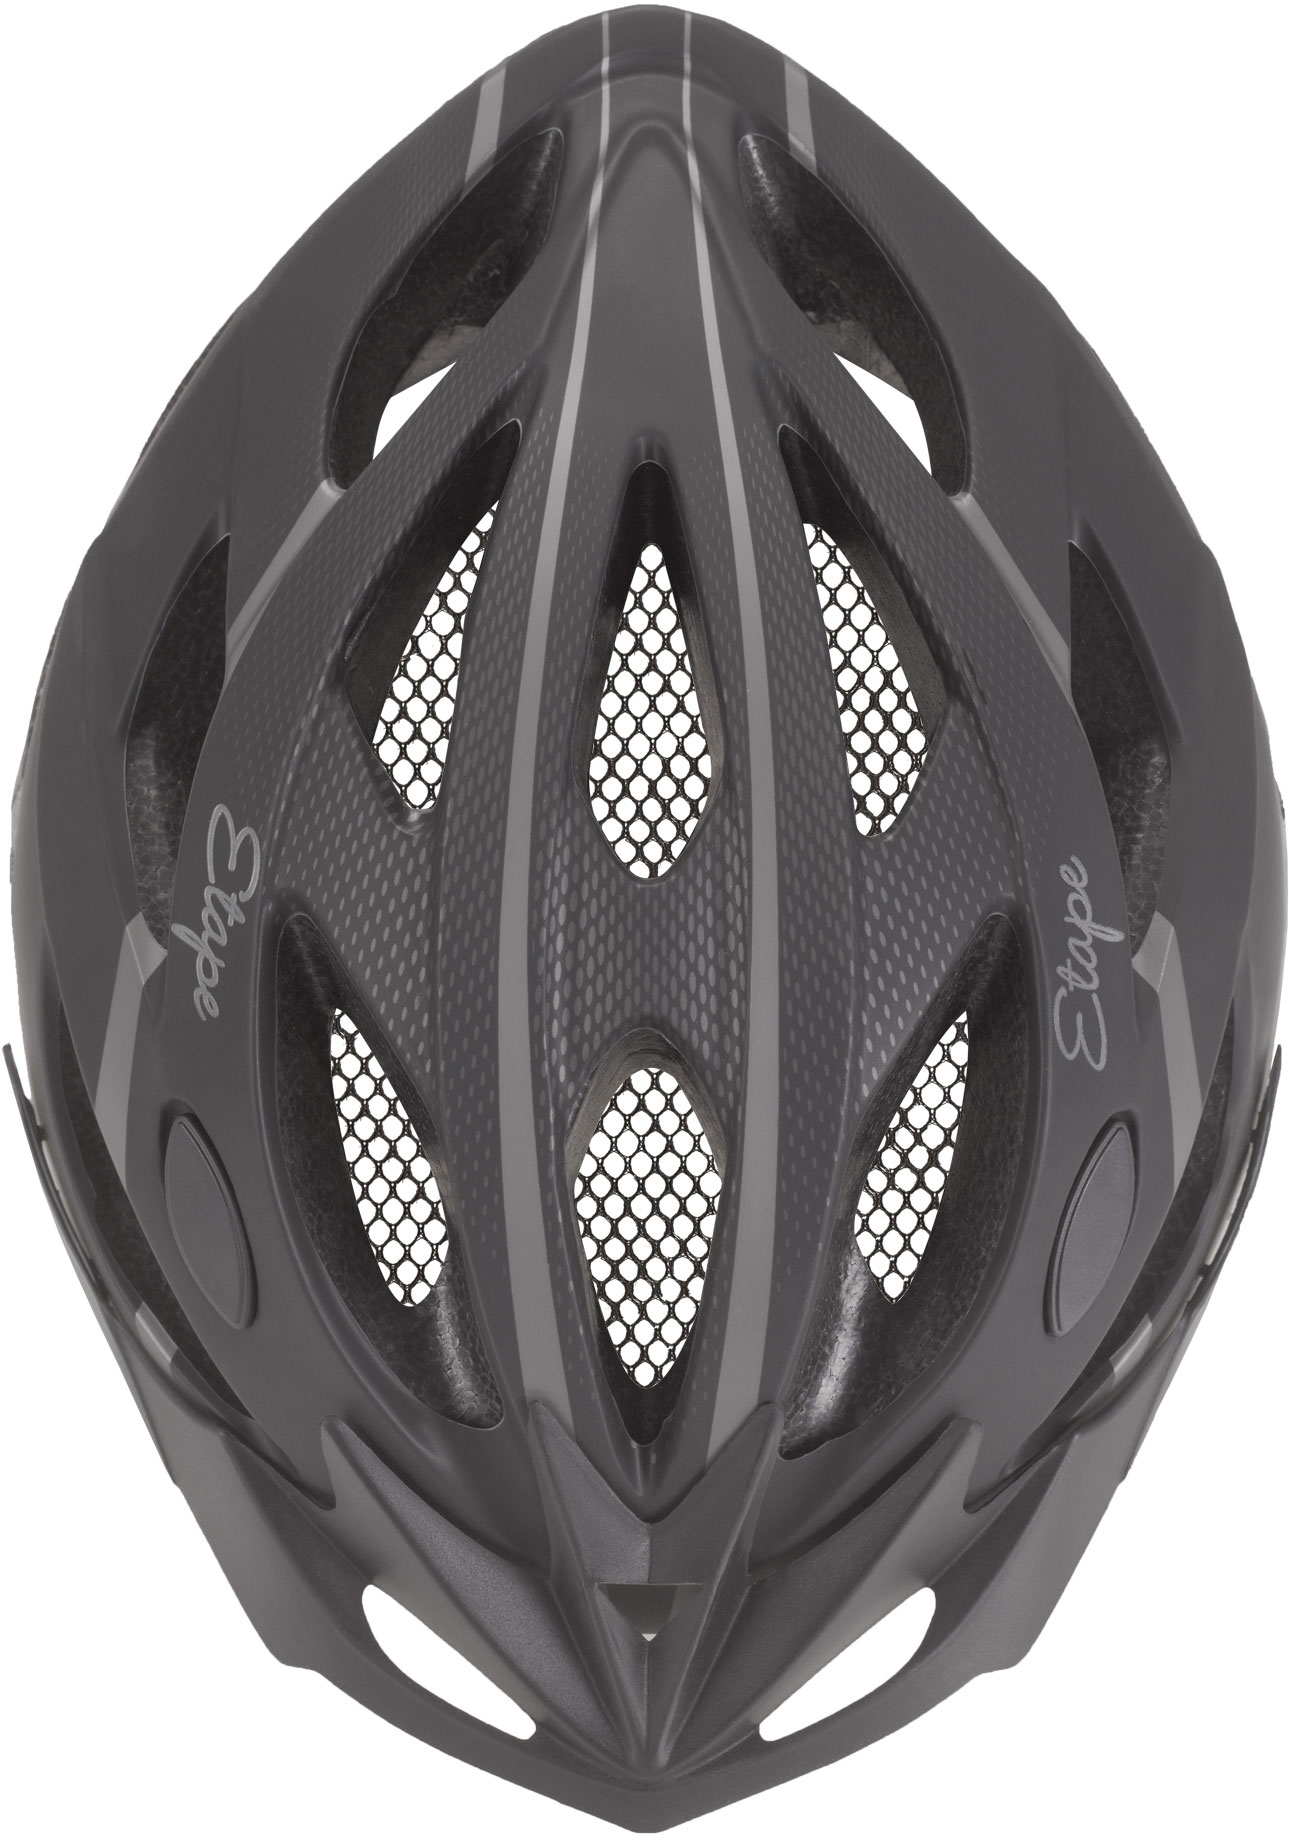 Women's cycling helmet